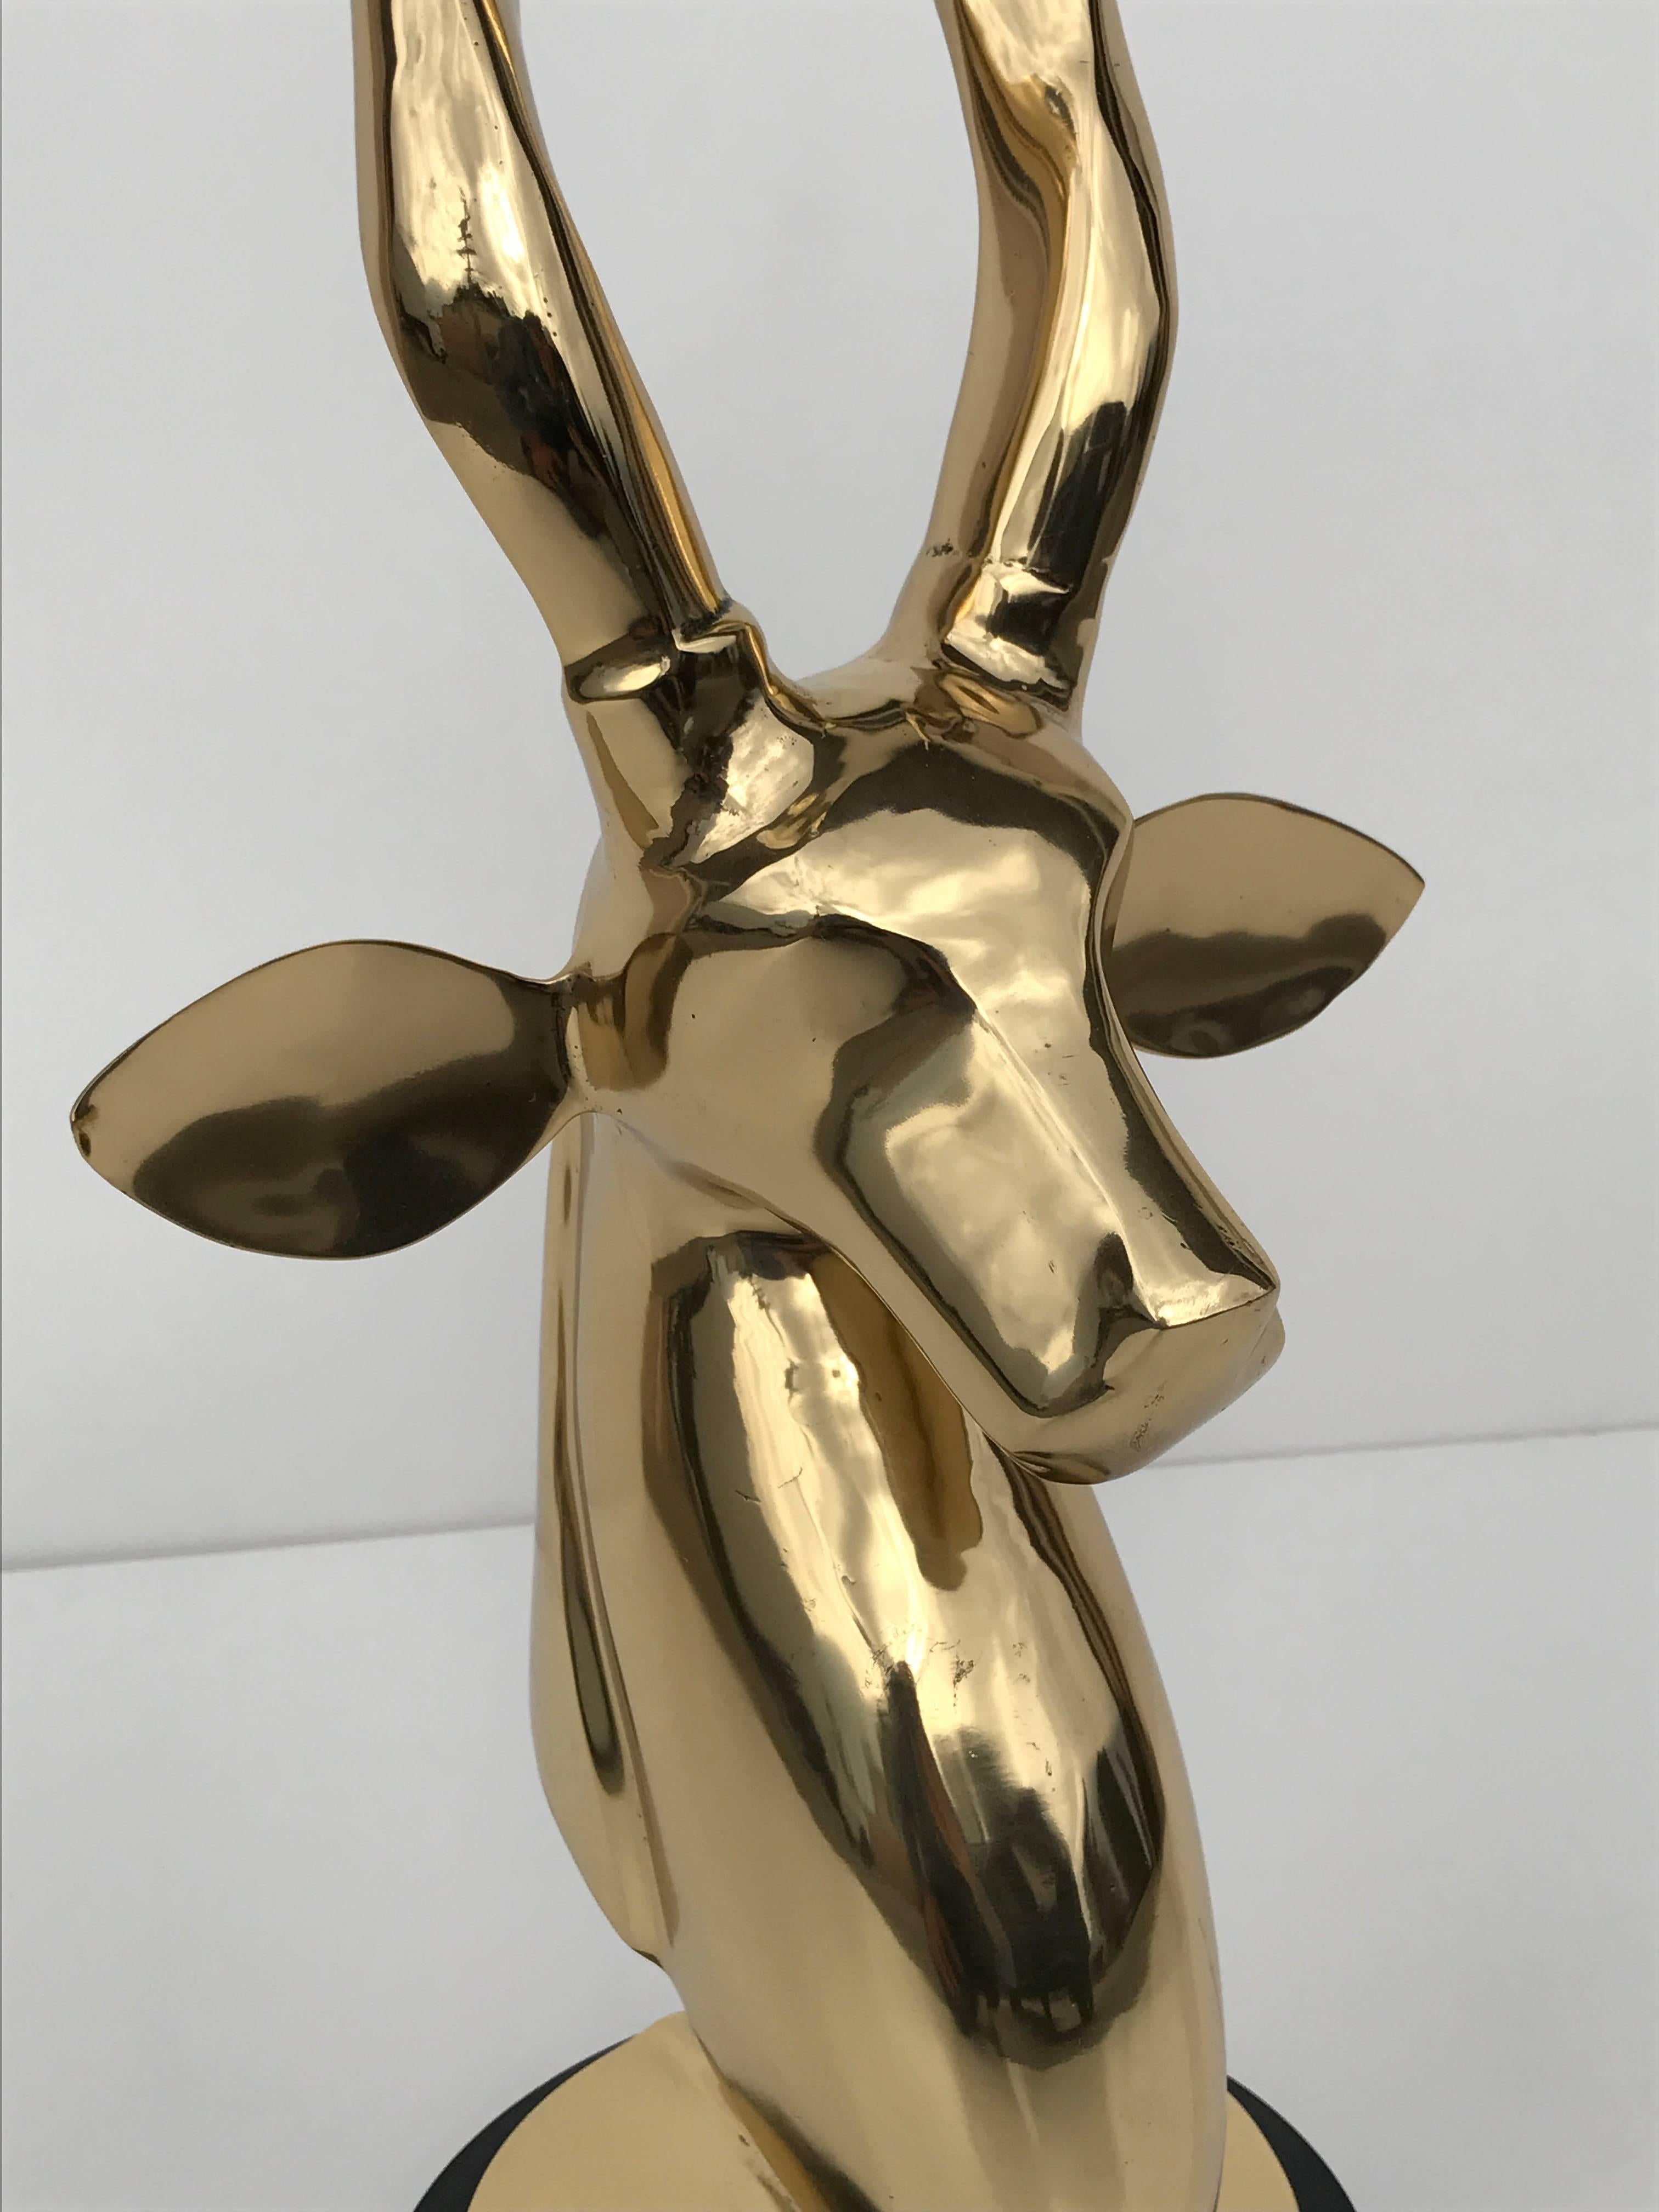 Hollywood Regency Polished Brass Kudu or Impala Sculpture Bust on Black Lucite Base